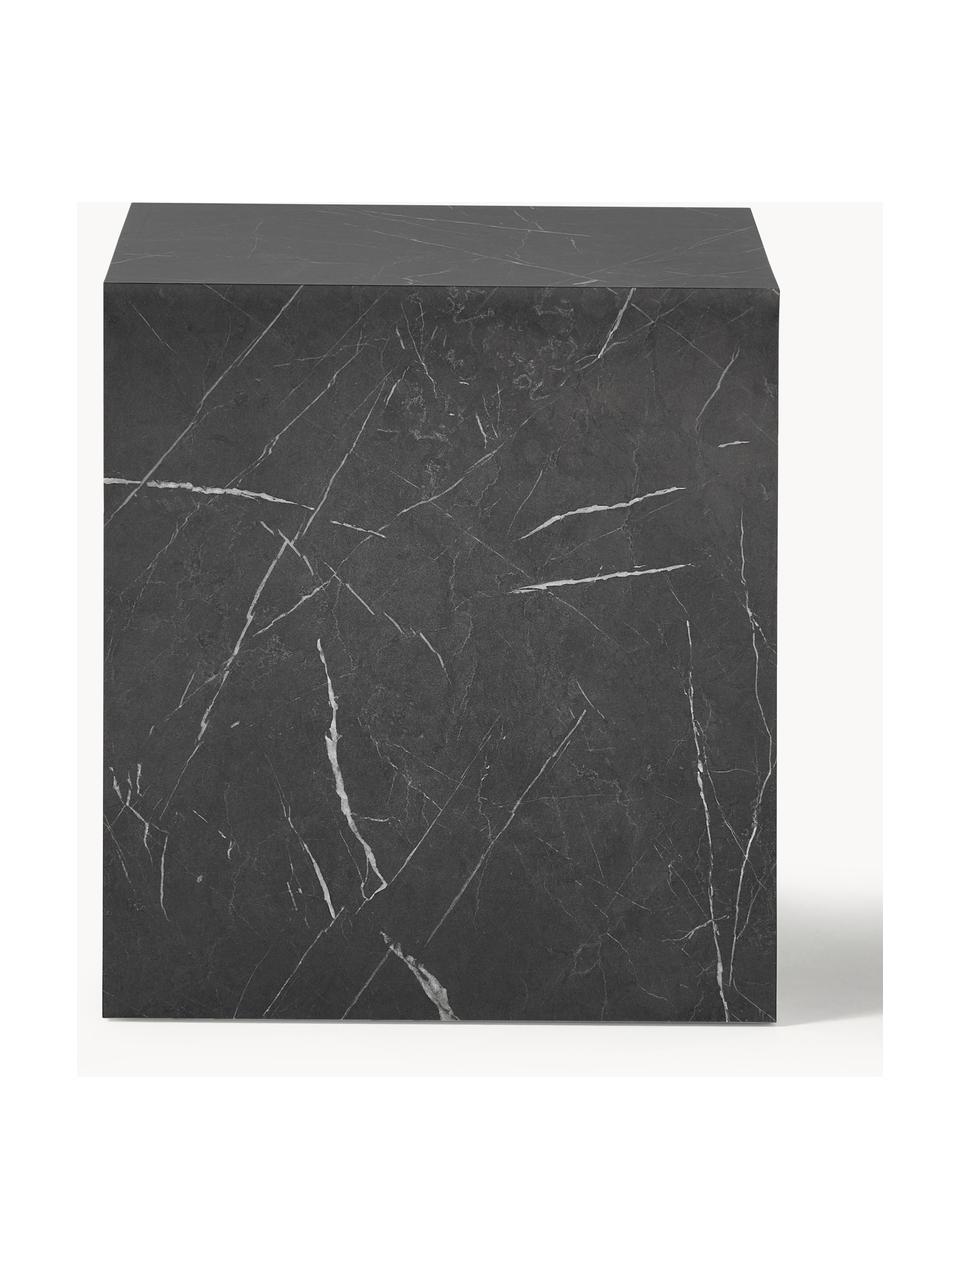 Table d'appoint aspect marbre Lesley, MDF, enduit feuille mélaminée

Ce produit est fabriqué à partir de bois certifié FSC® issu d'une exploitation durable, Noir aspect marbre, haute brillance, larg. 45 x haut. 50 cm